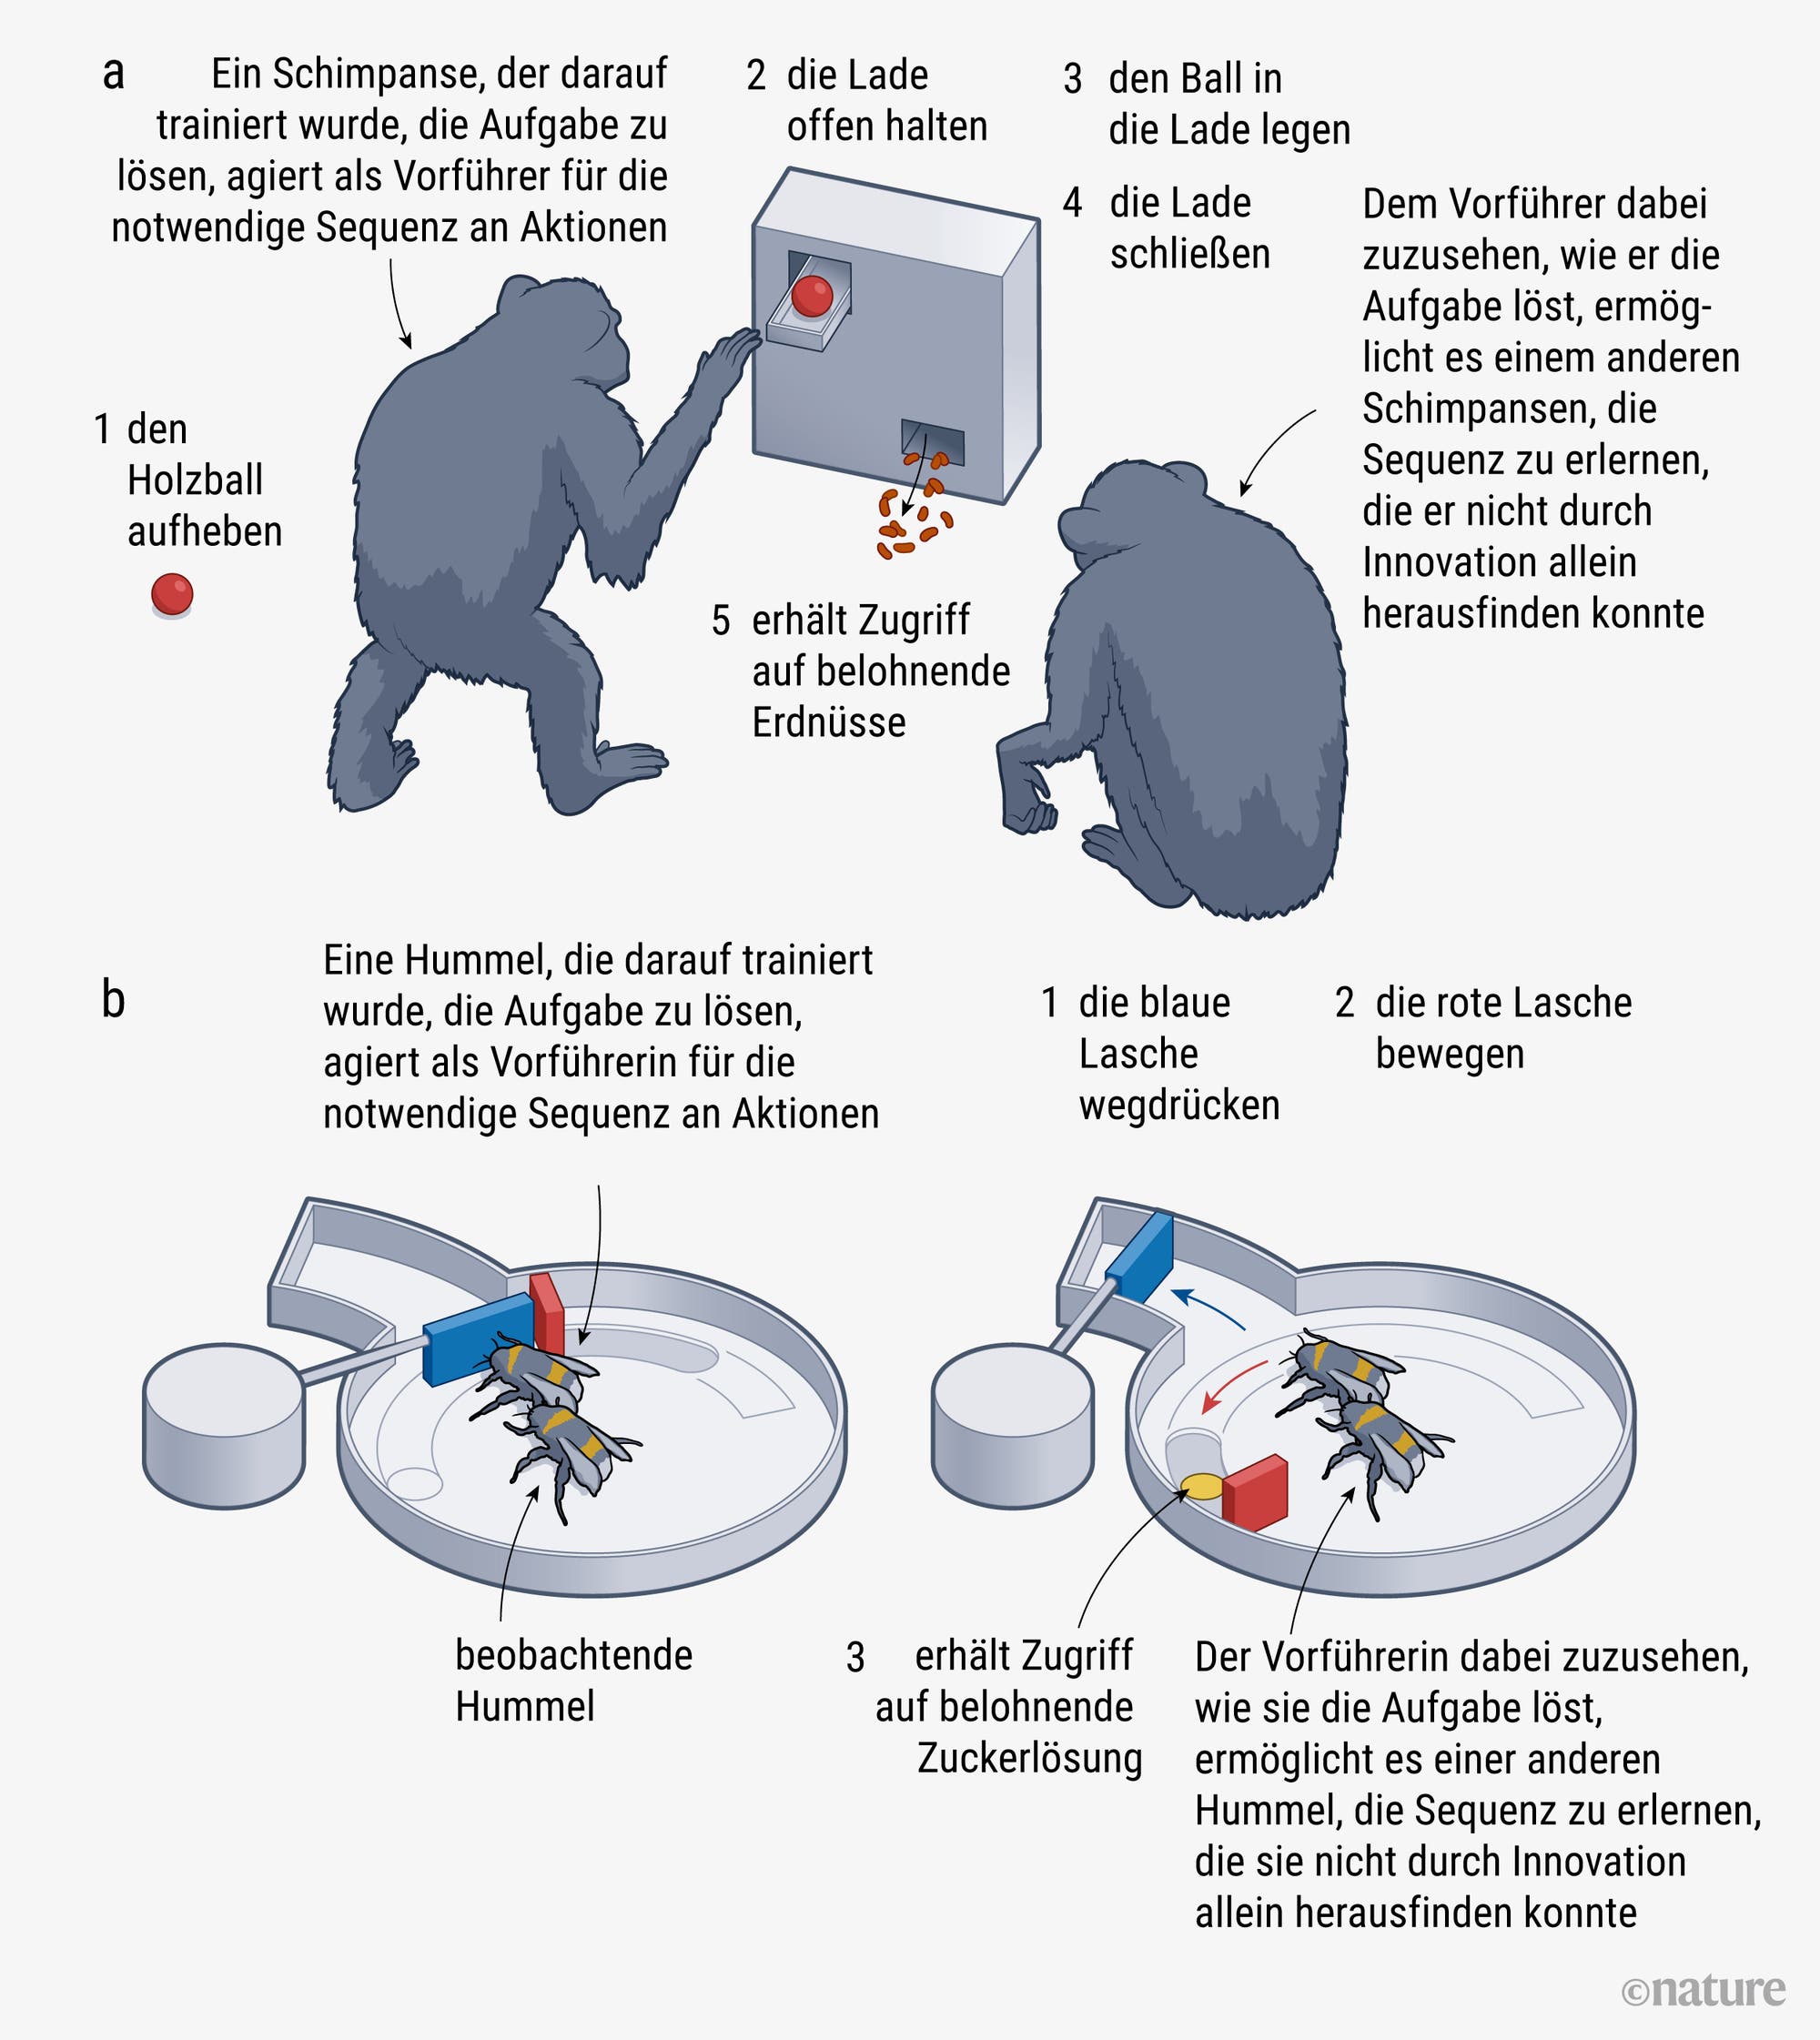 Eine Grafik, die die im Text erwähnten Versuche bei Schimpansen und Hummeln bildlich zusammenfasst